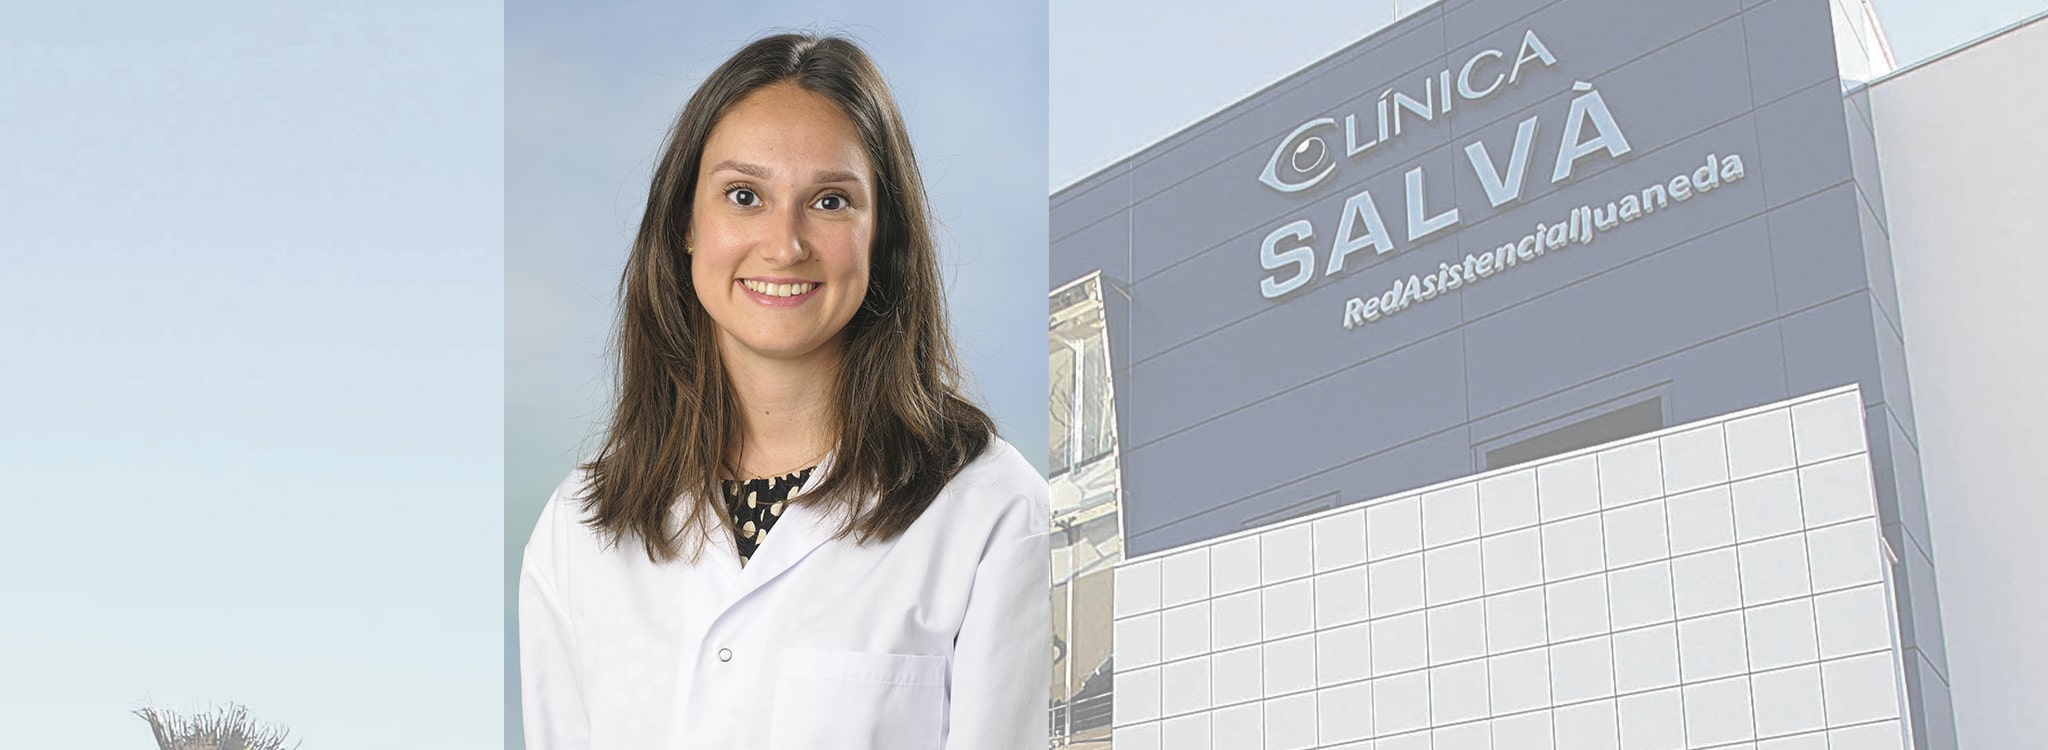 Oftalmedic Salvà refuerza su Unidad de Glaucoma con la incorporación de la Dra. Teresa Salvà